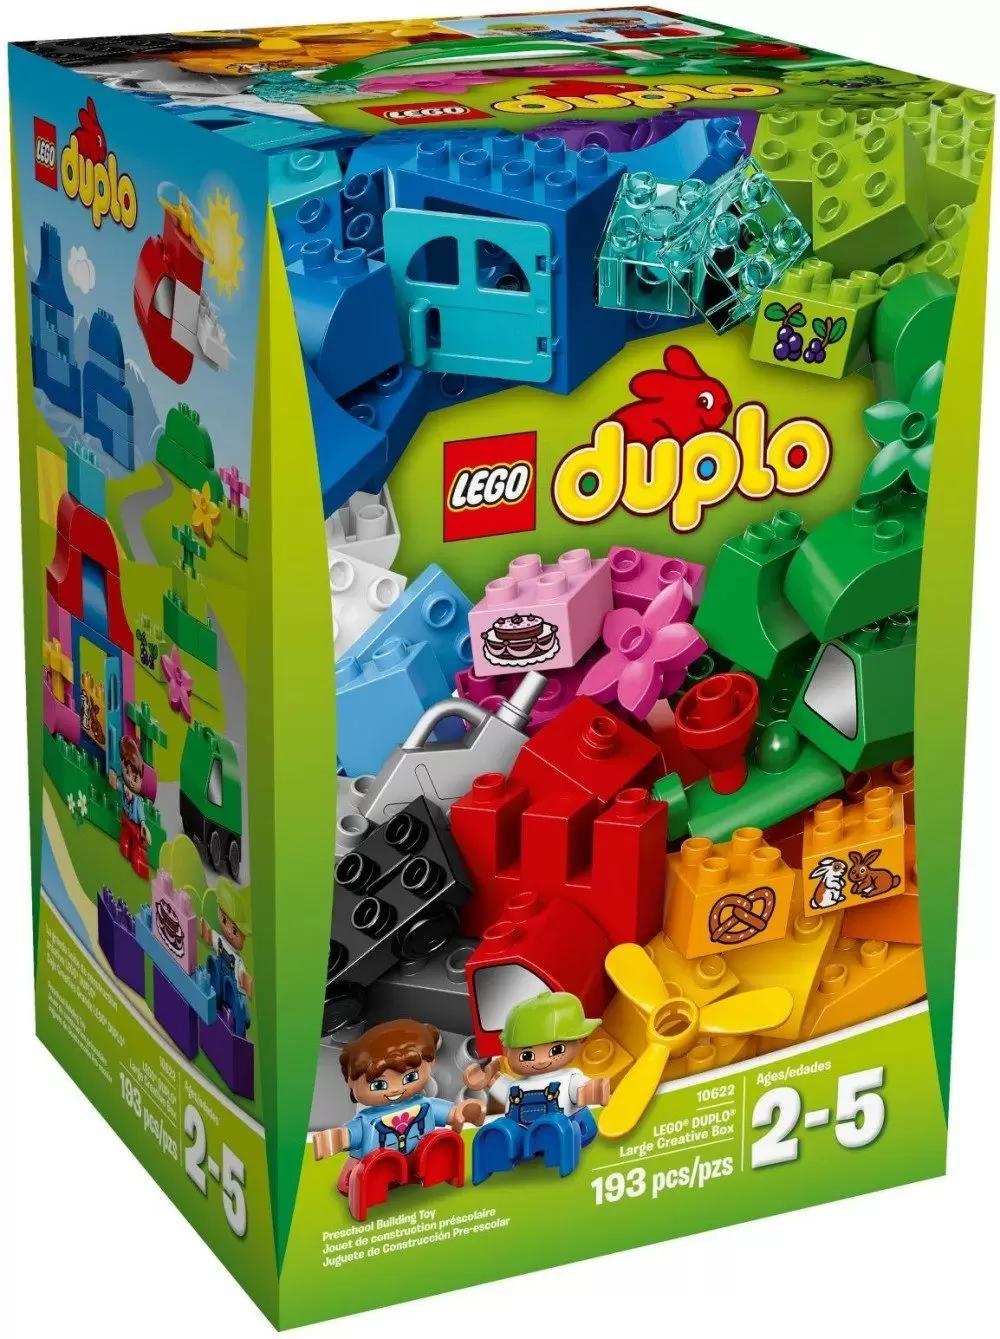 LEGO Duplo - Large Creative Box